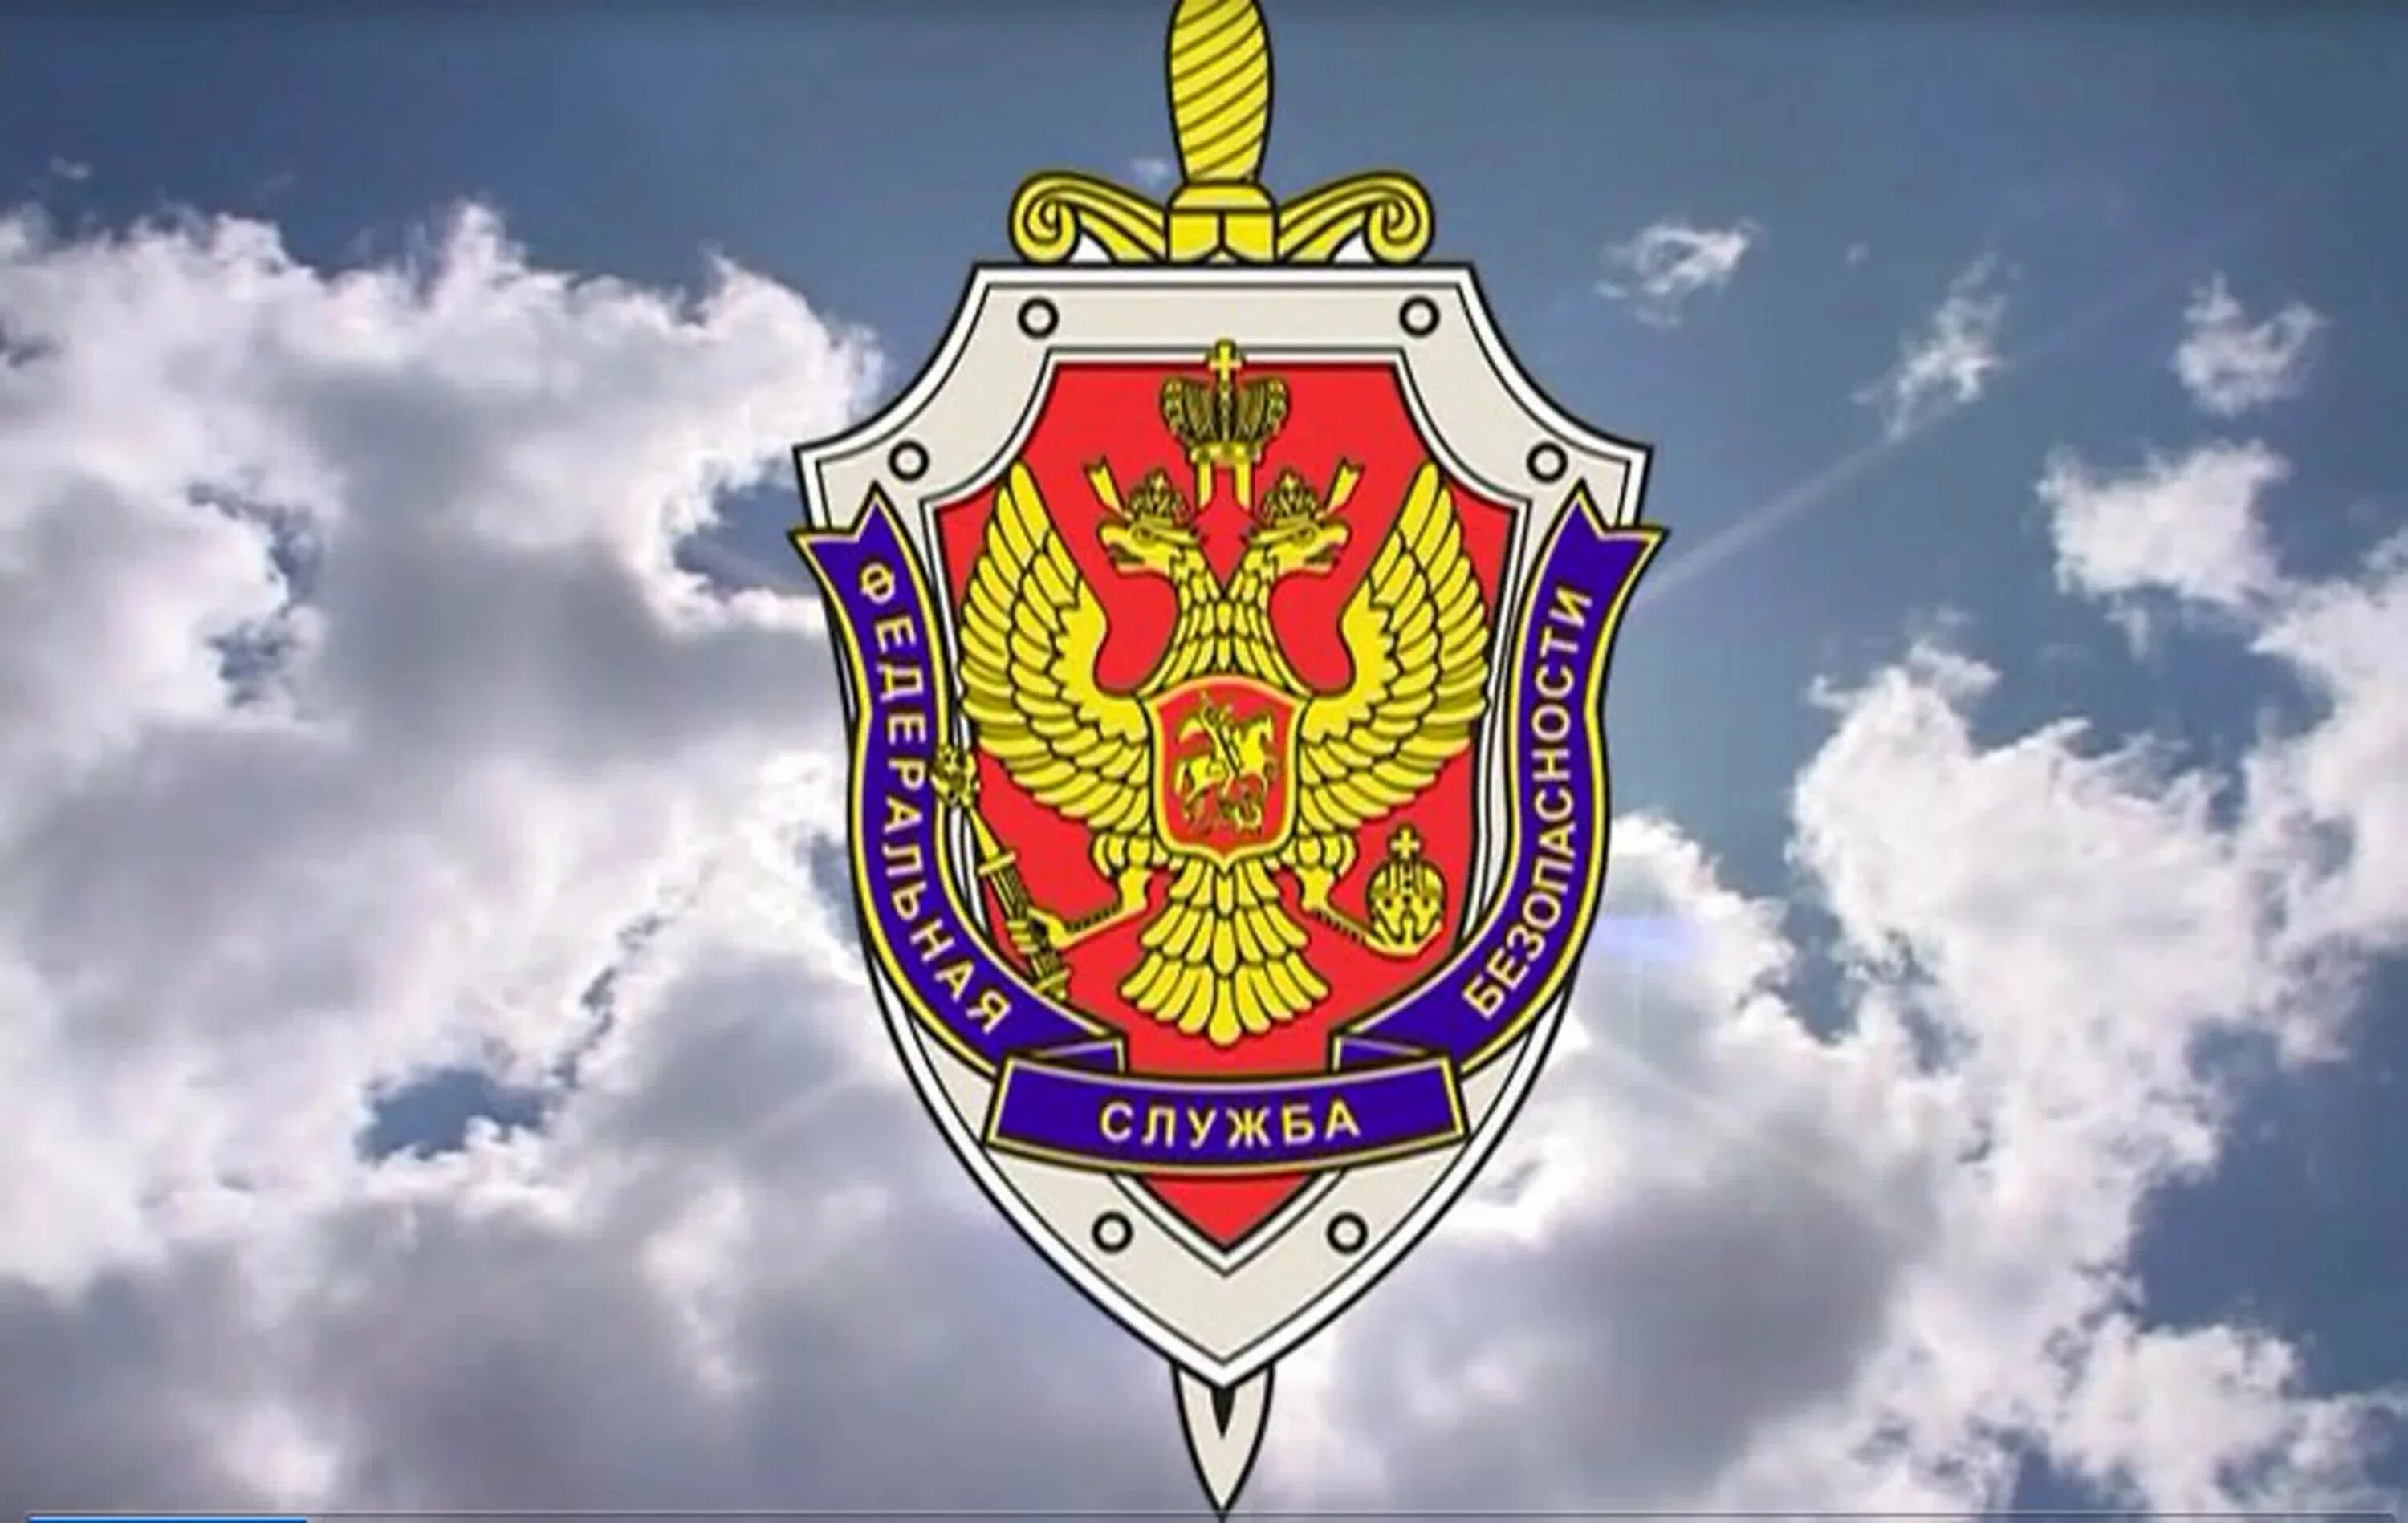 УФСБ России эмблема. Федеральная служба безопасности и порядка